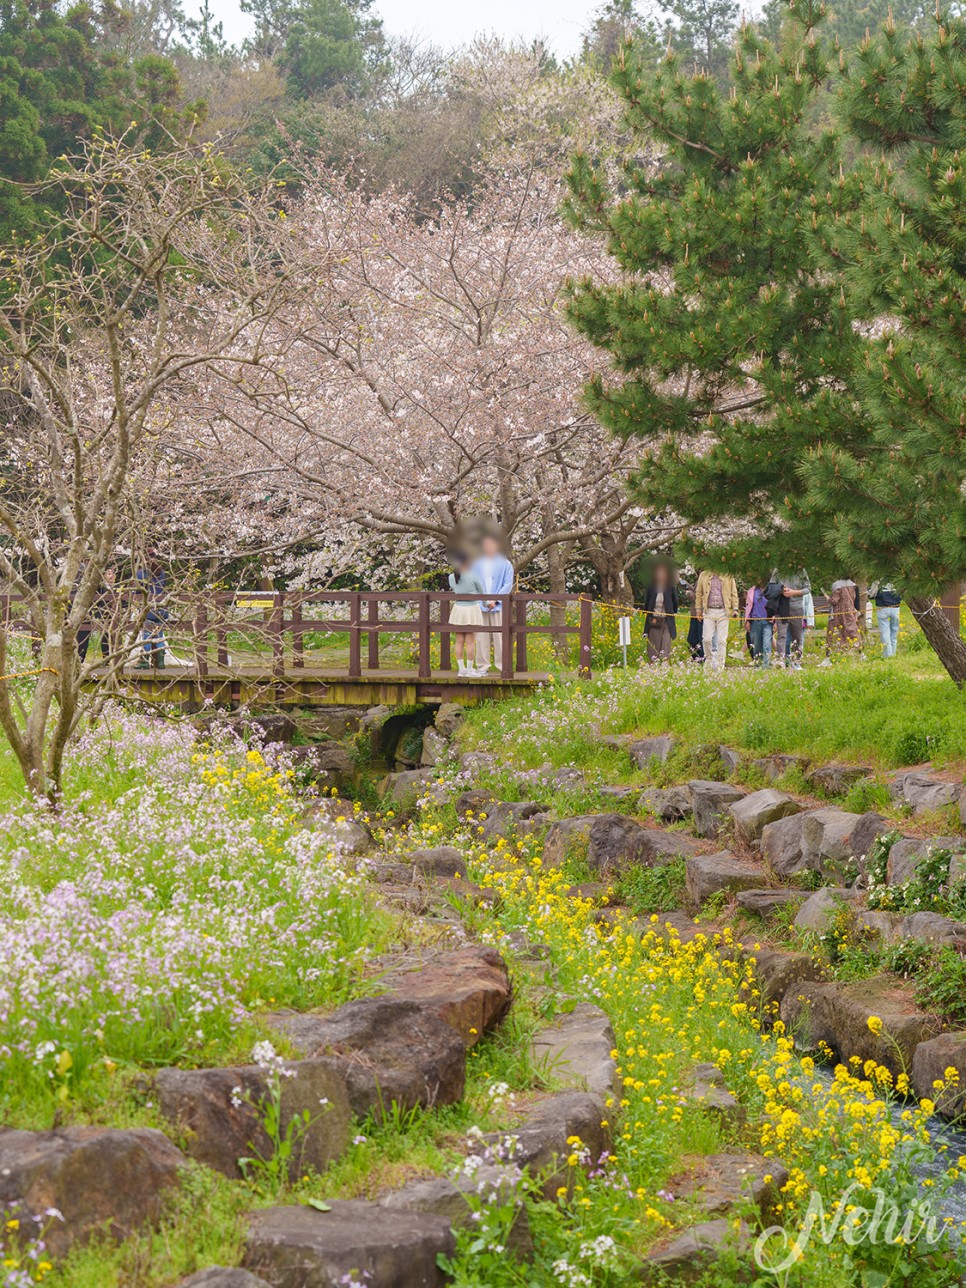 제주도 벚꽃 명소 서귀포 예래생태공원 벚꽃 개화시기